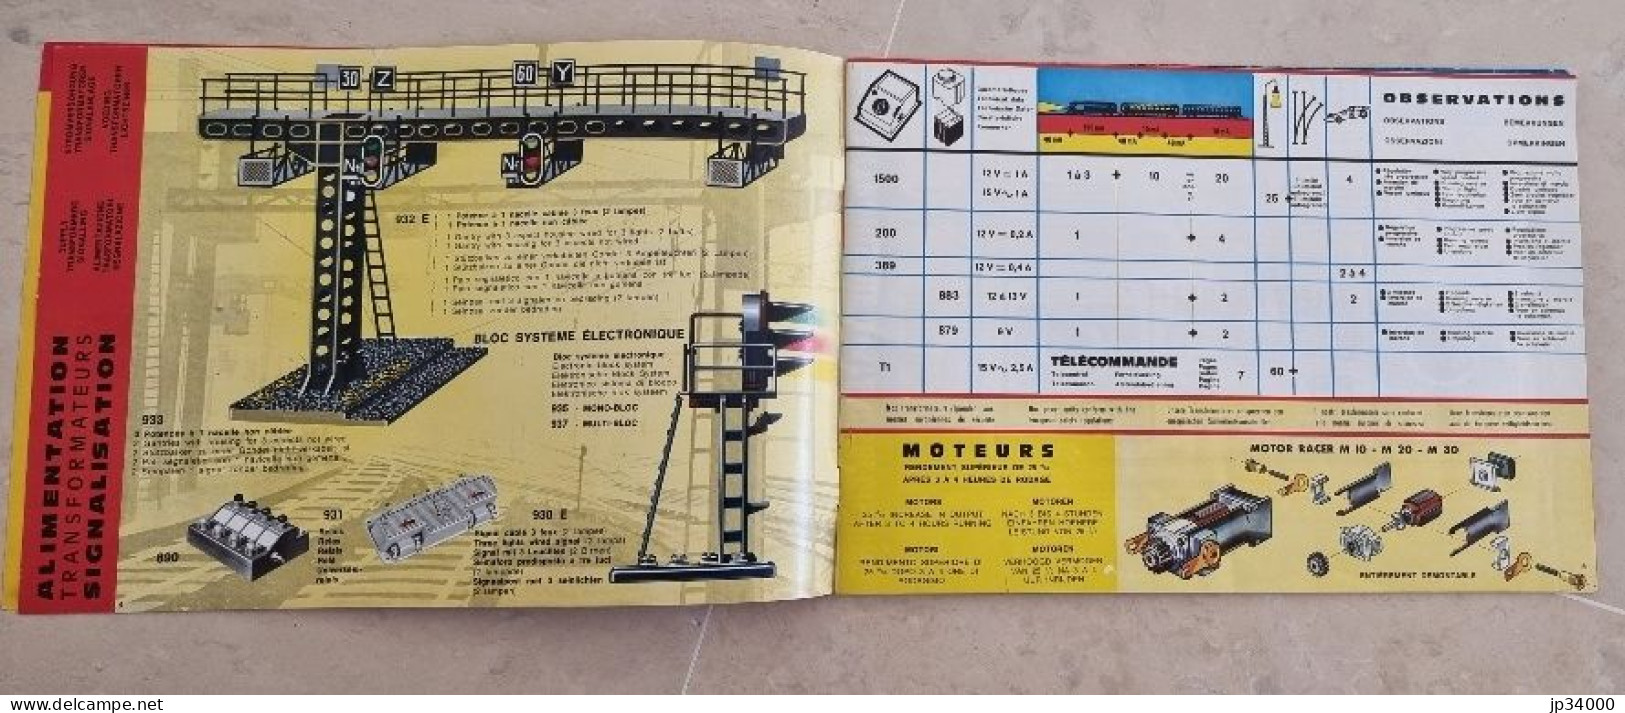 TELECOMMANDE ELECTRONIQUE (Jouef HO) Complet 32 Pages, 1969-70 (Trains Electriques) - Literatuur & DVD